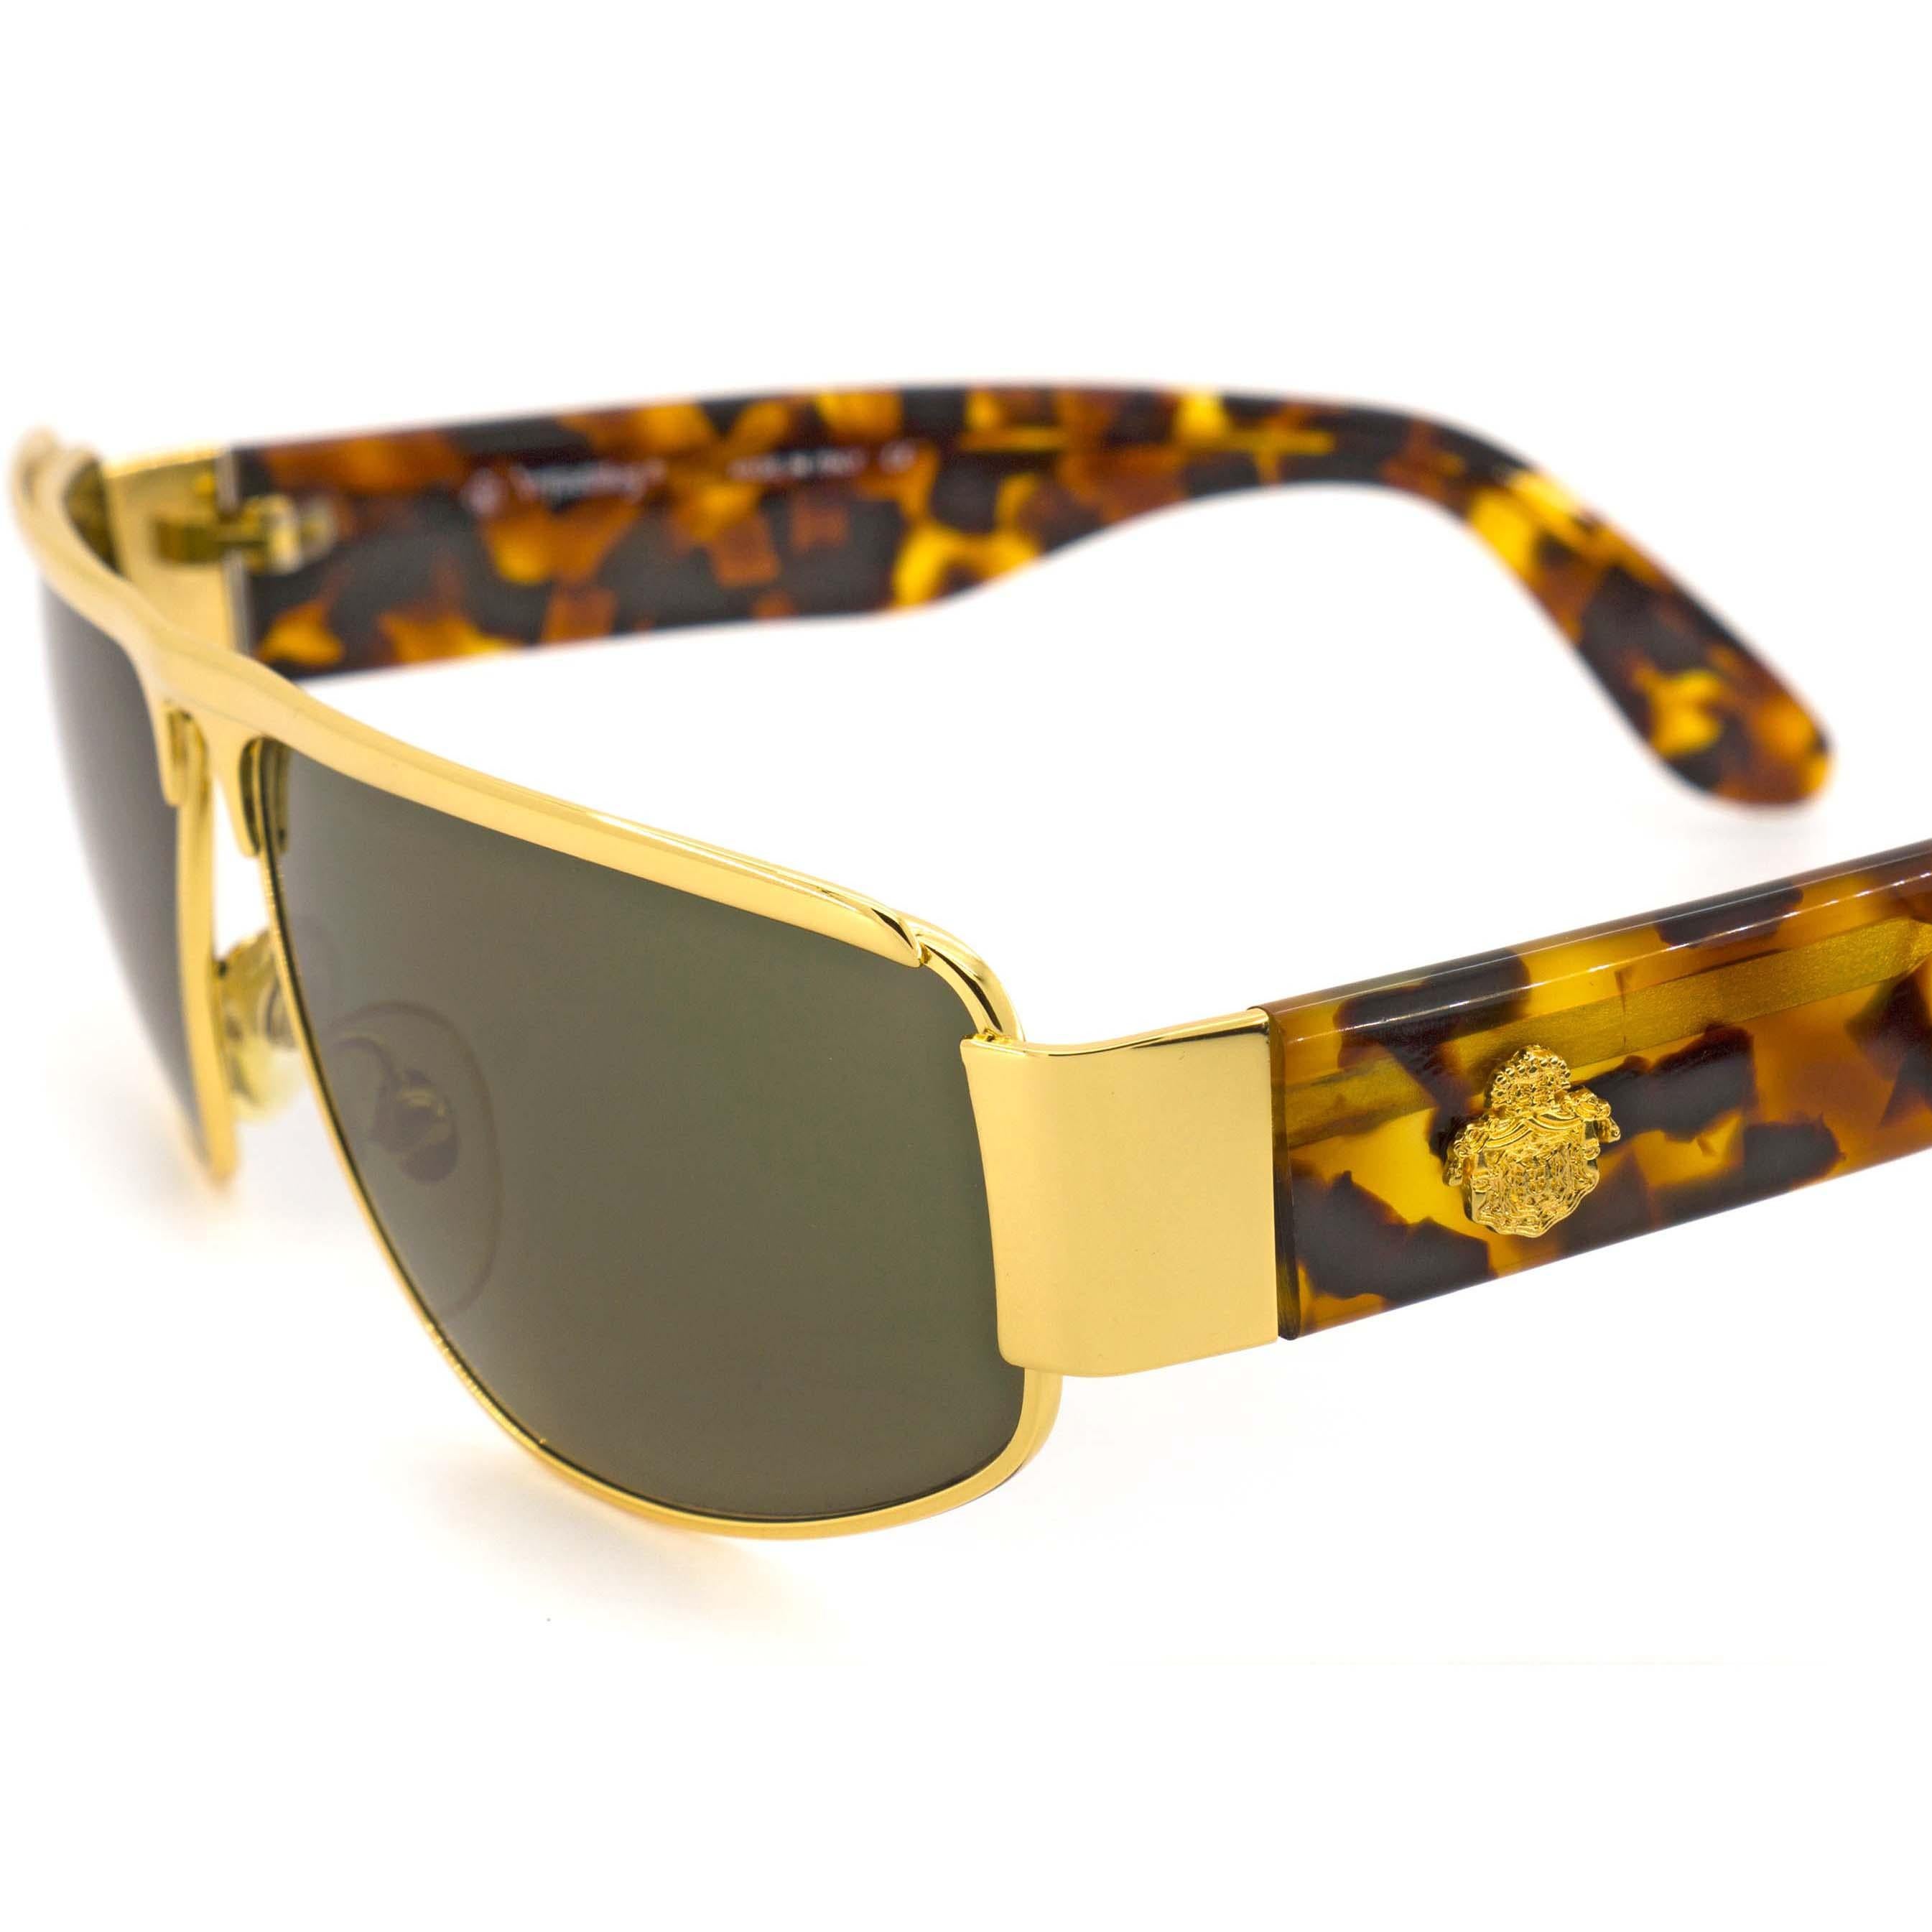 Prince Egon von Furstenberg vintage sunglasses 80s In New Condition For Sale In Santa Clarita, CA